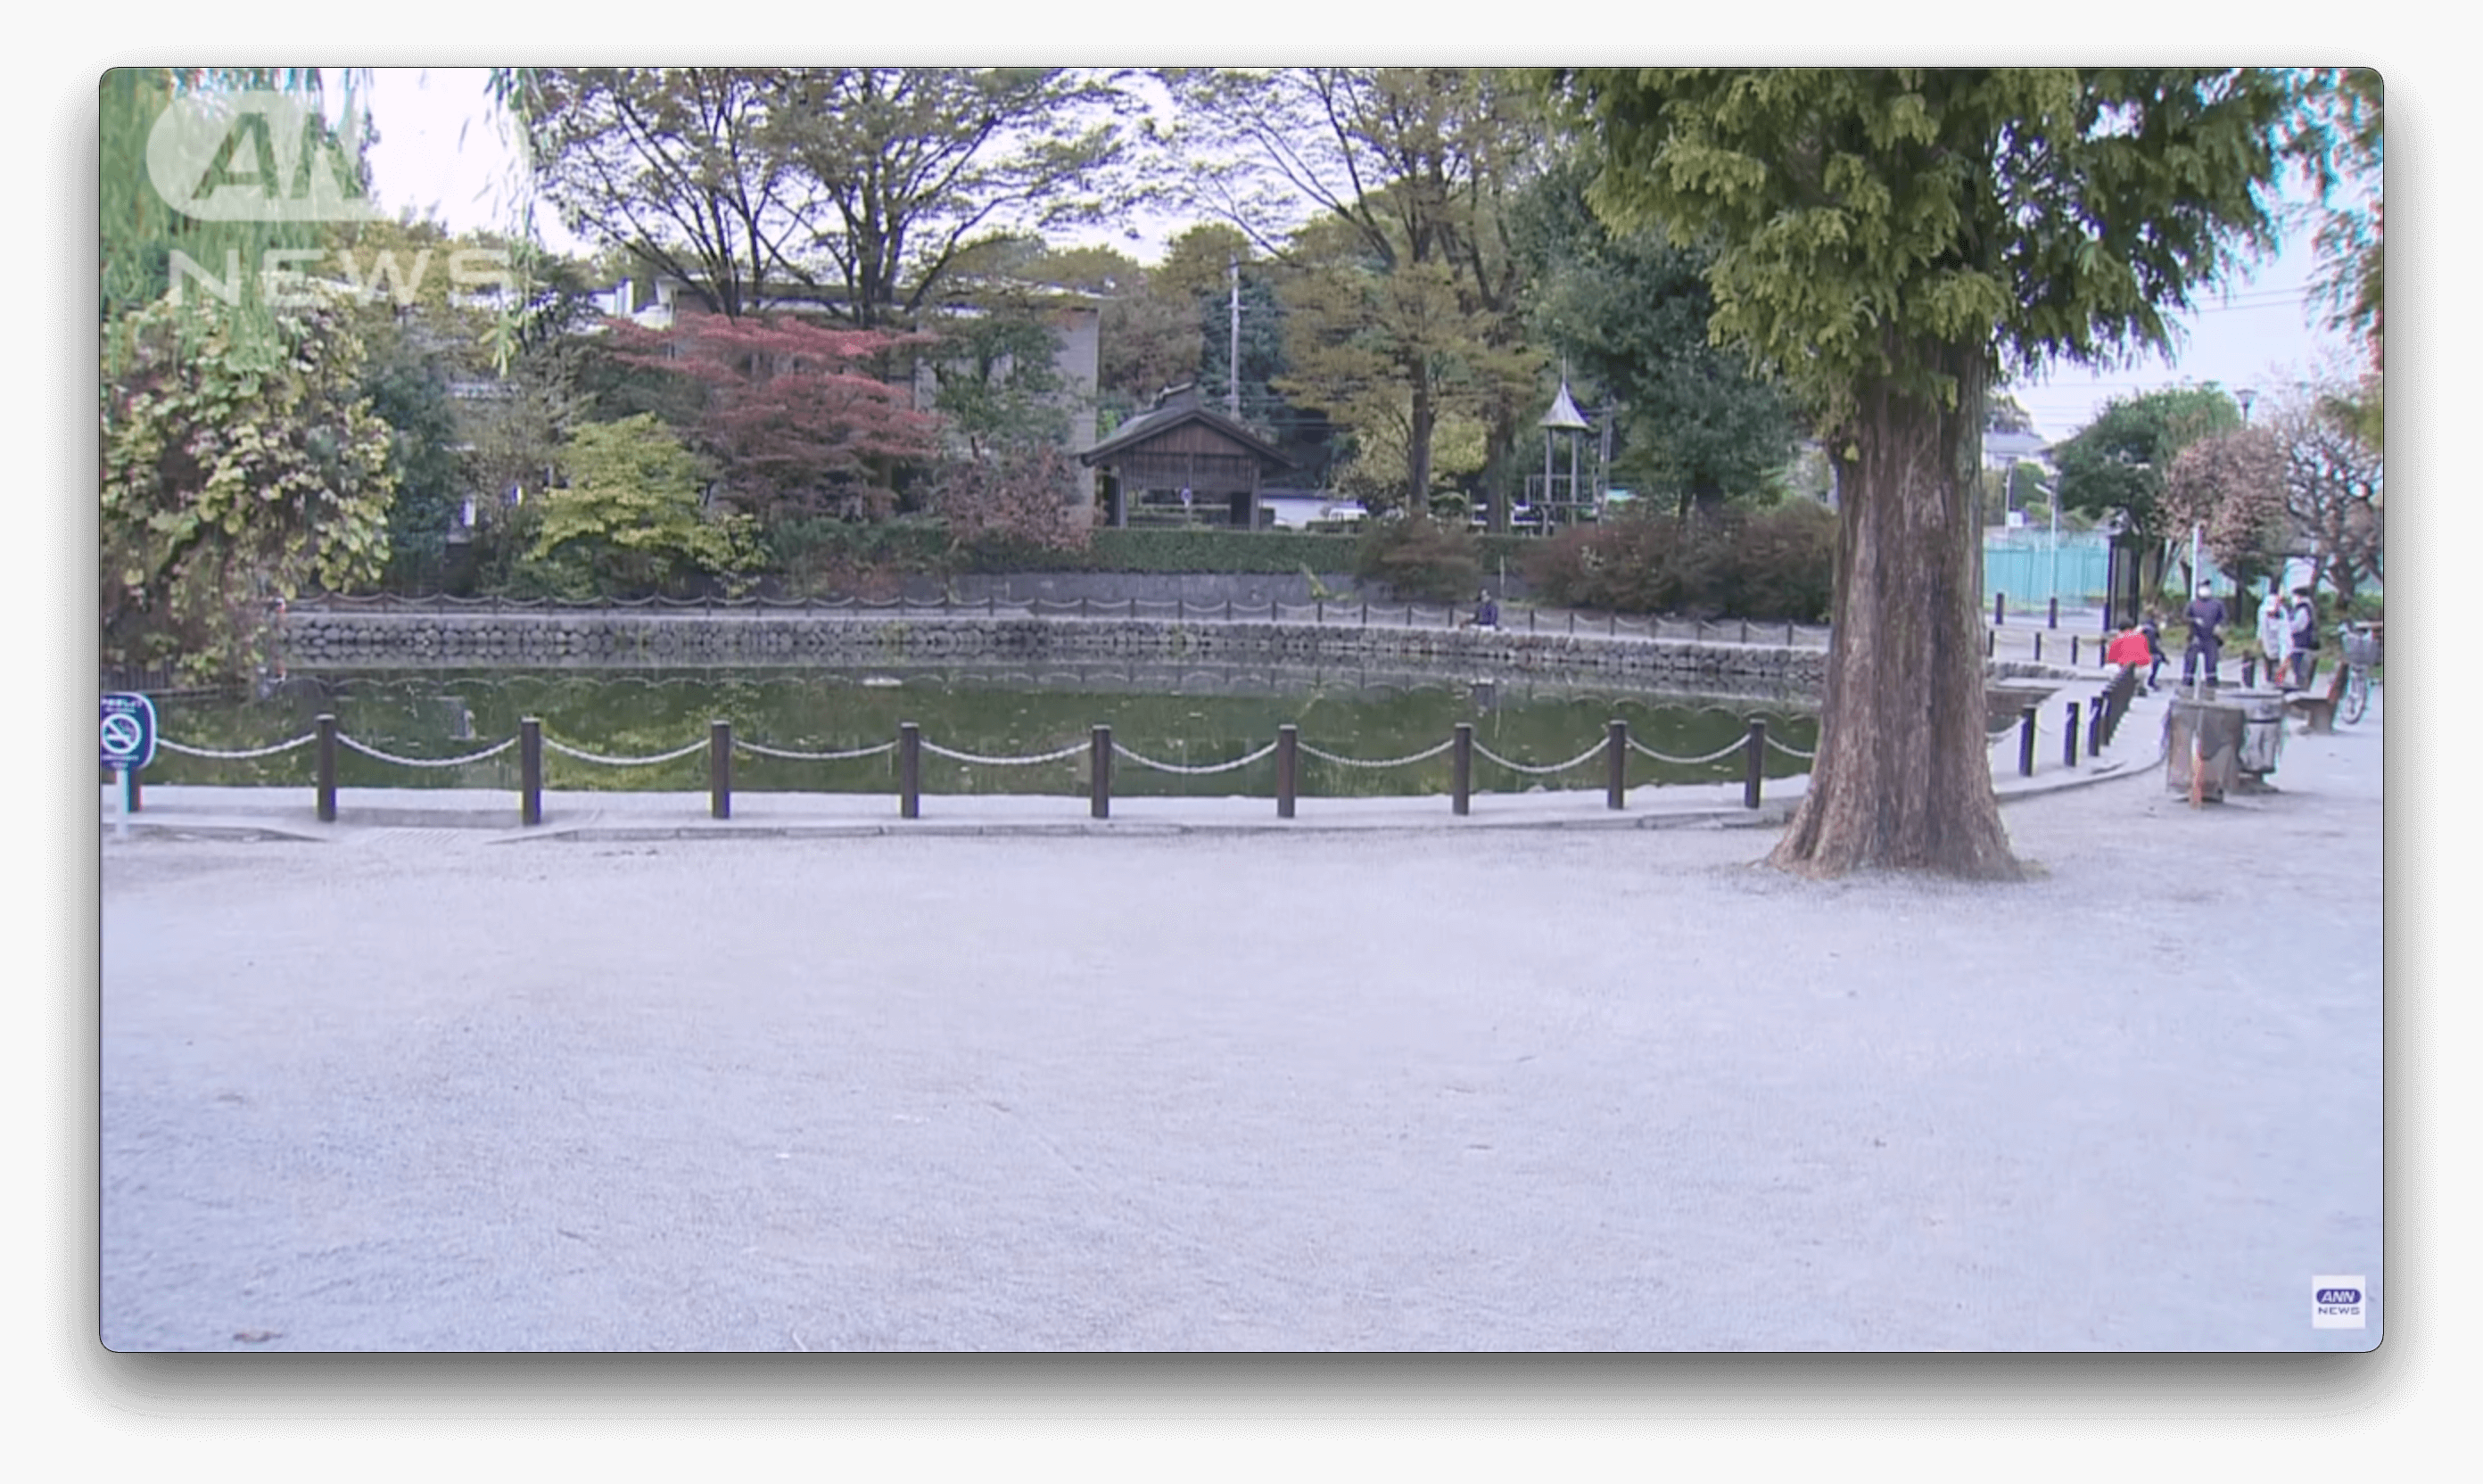 Grupo de 4 adolescentes, suspeito de jogar um menino em um lago, é preso em Tóquio